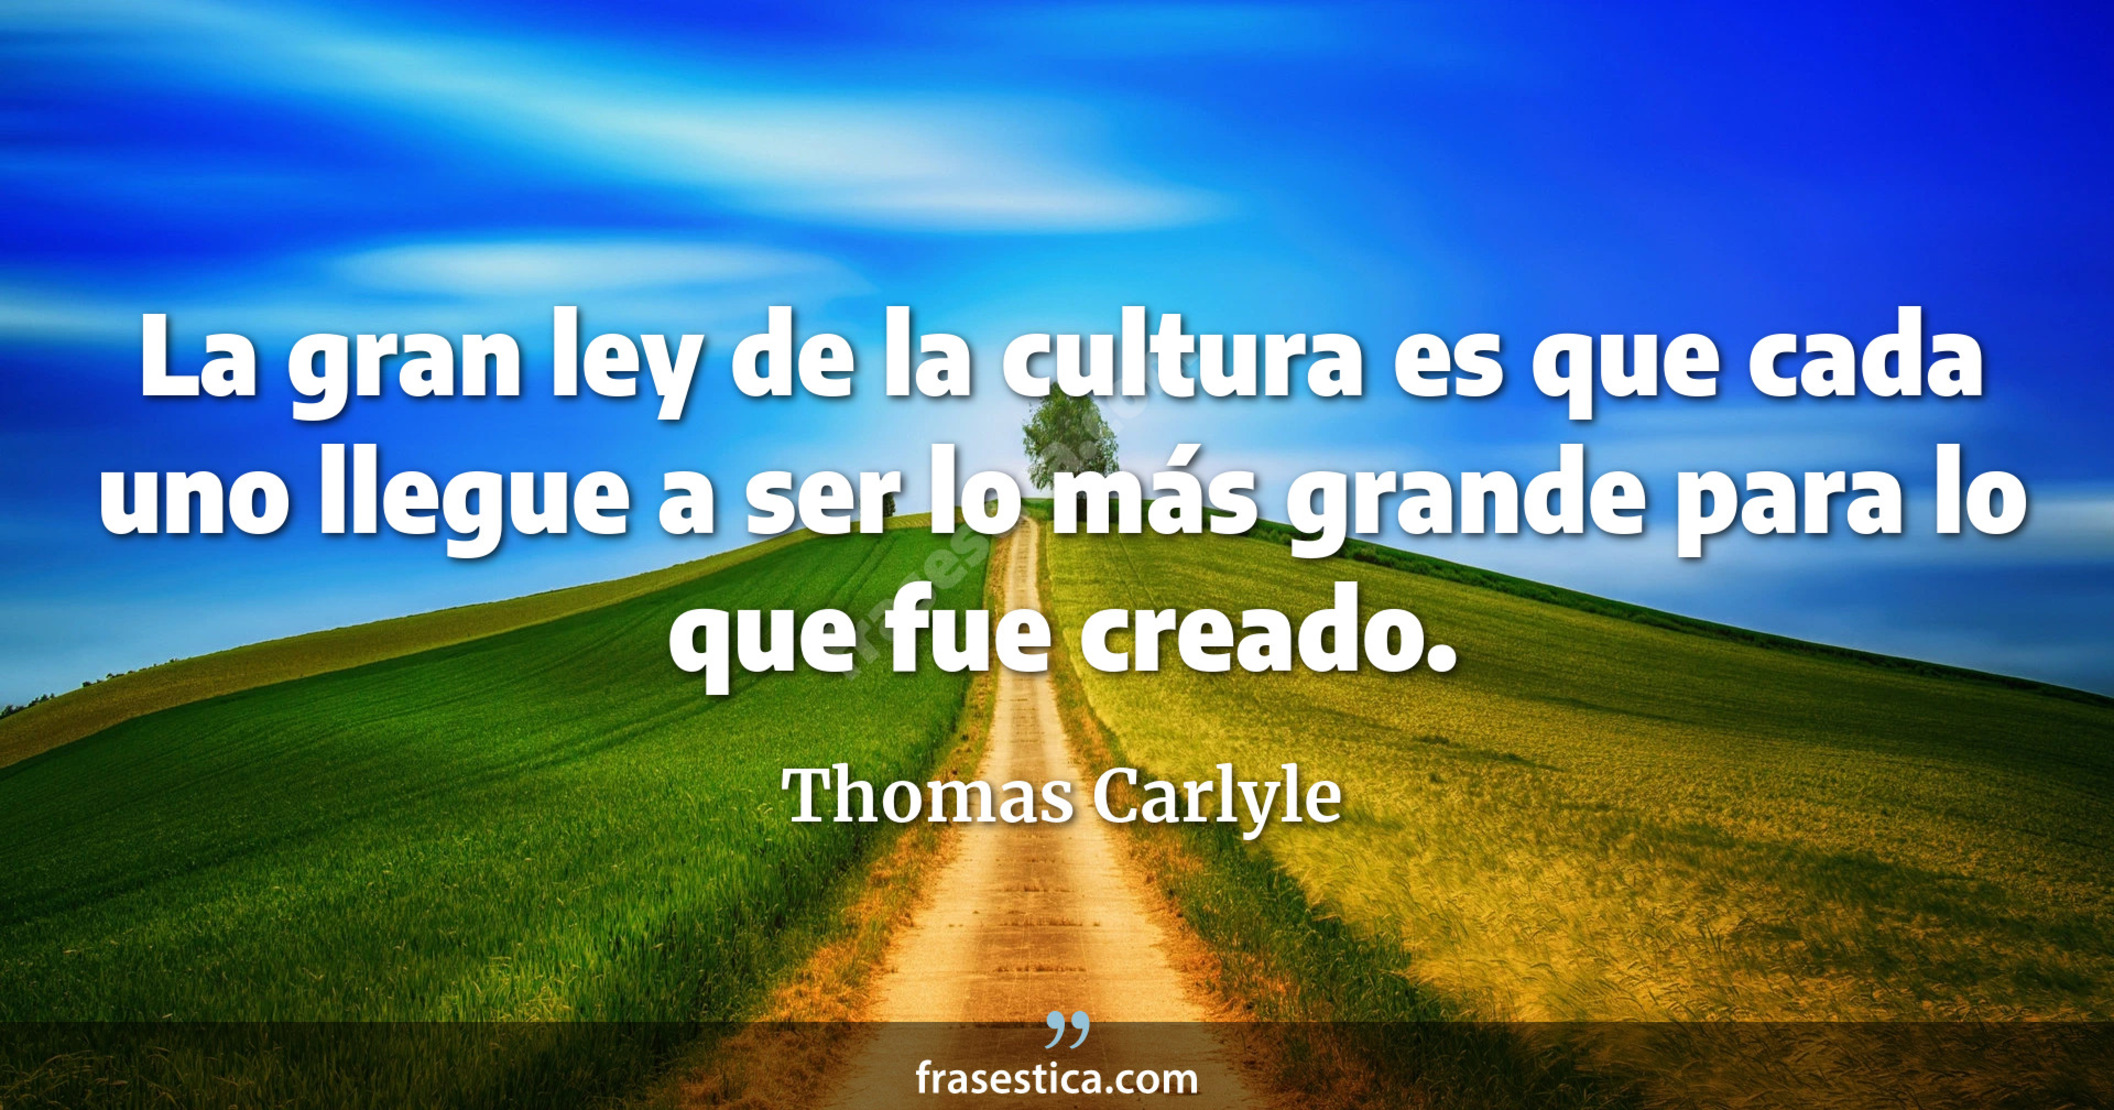 La gran ley de la cultura es que cada uno llegue a ser lo más grande para lo que fue creado. - Thomas Carlyle